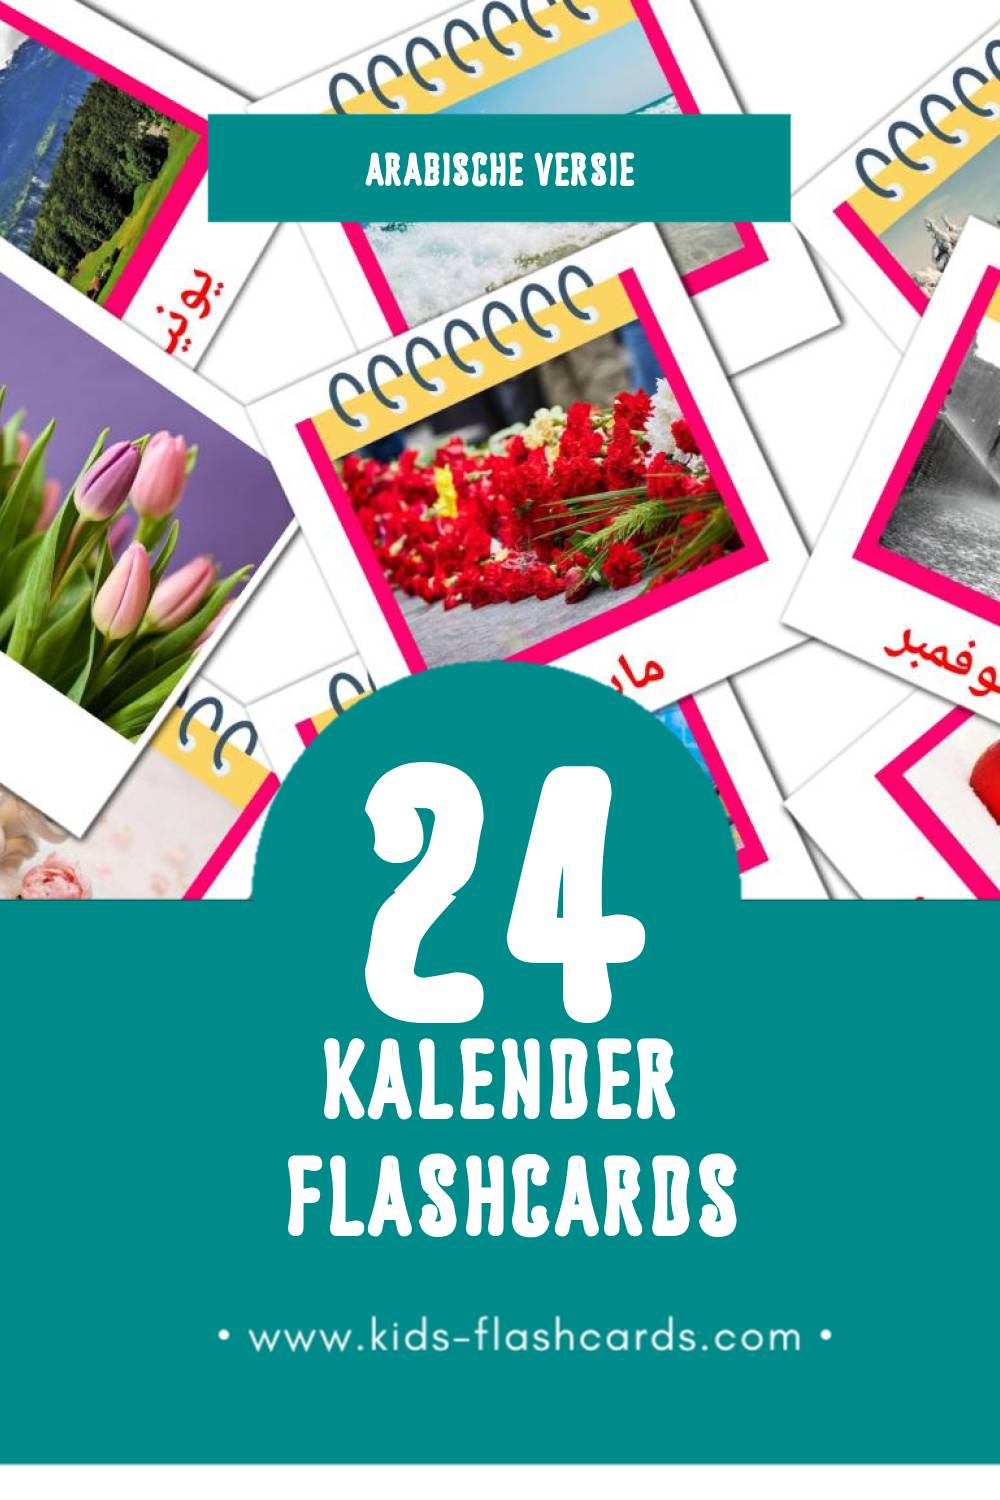 Visuele الرزنامة Flashcards voor Kleuters (24 kaarten in het Arabisch)